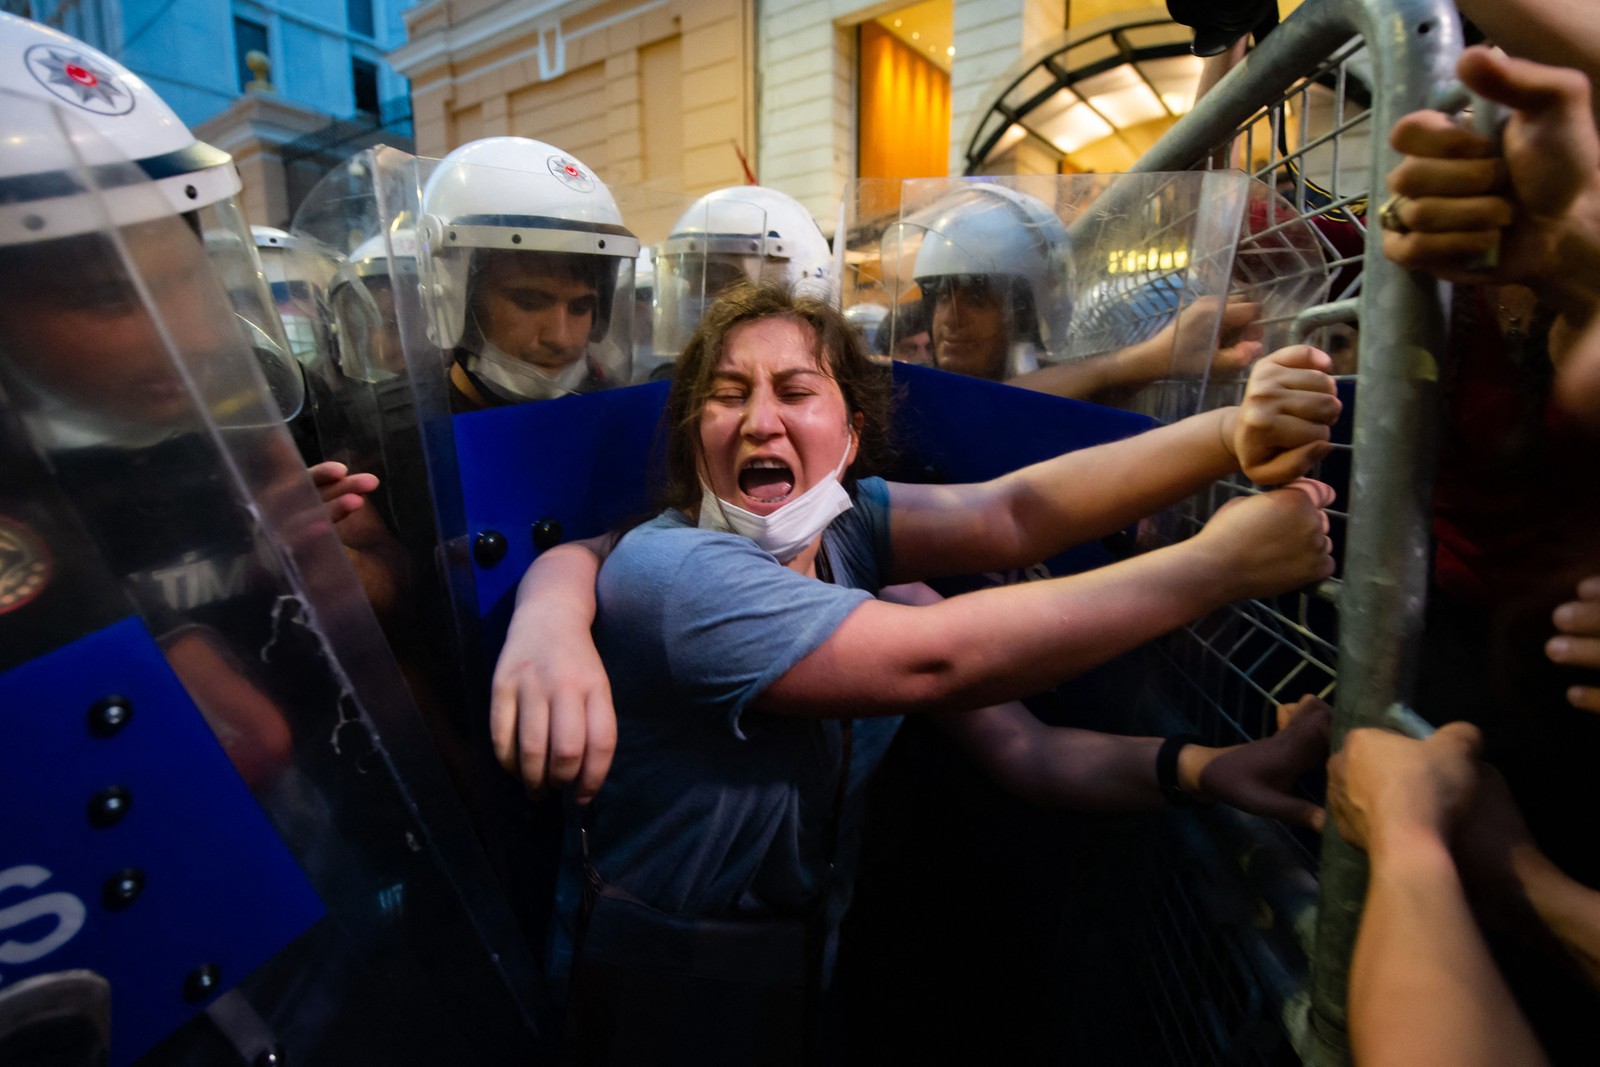 Mulheres entram em confronto com a polícia turca enquanto protestam contra a decisão da do governo de se retirar da Convenção de Istambul, um tratado de combate ao feminicídio e à violência domésticaAFP